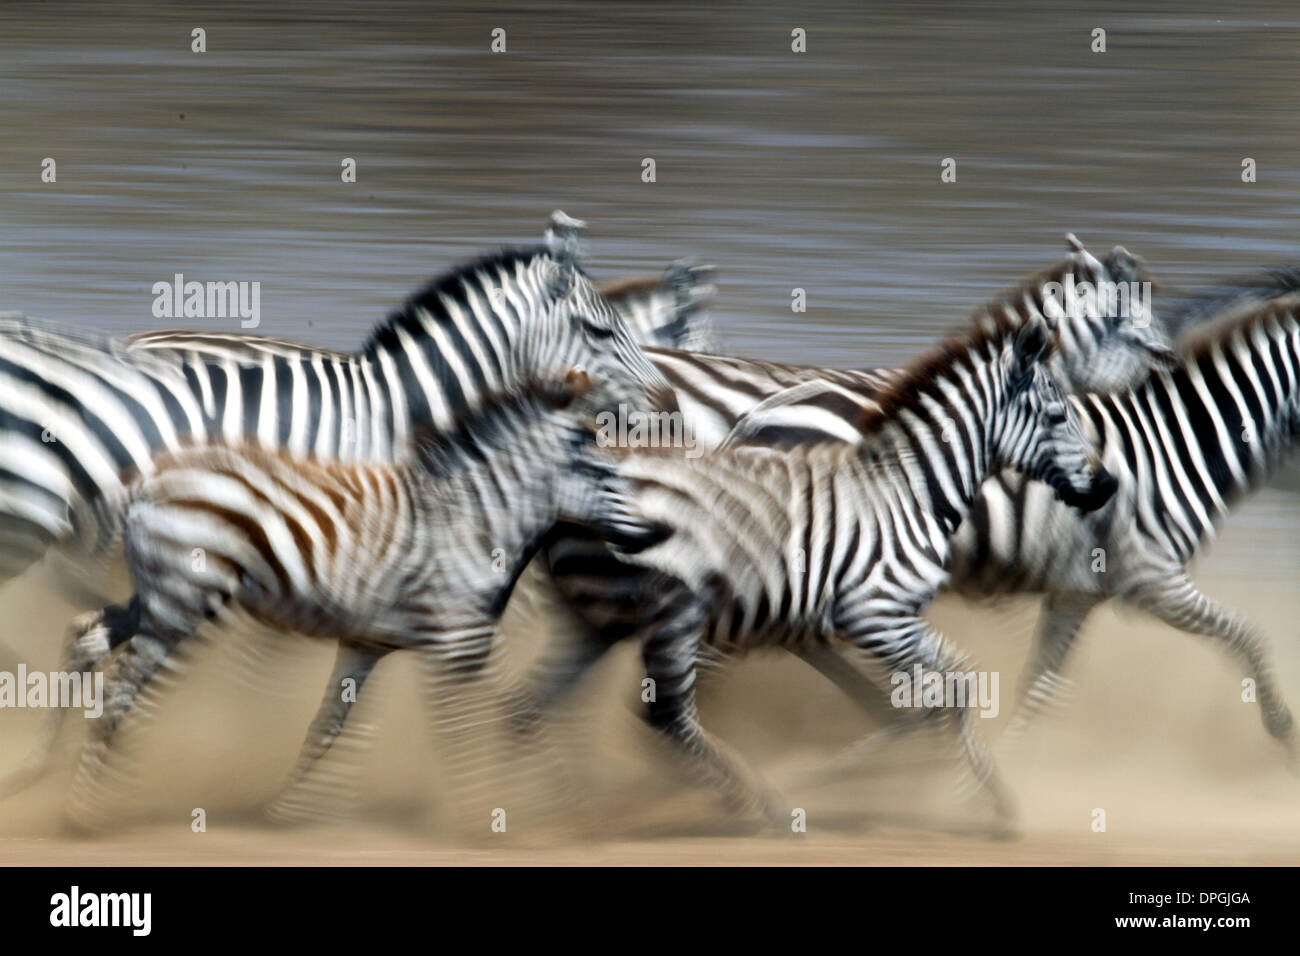 Cebras cruzando el río Mara, Masai Mara, Kenya, Africa, durante la gran migración anual. Foto de stock